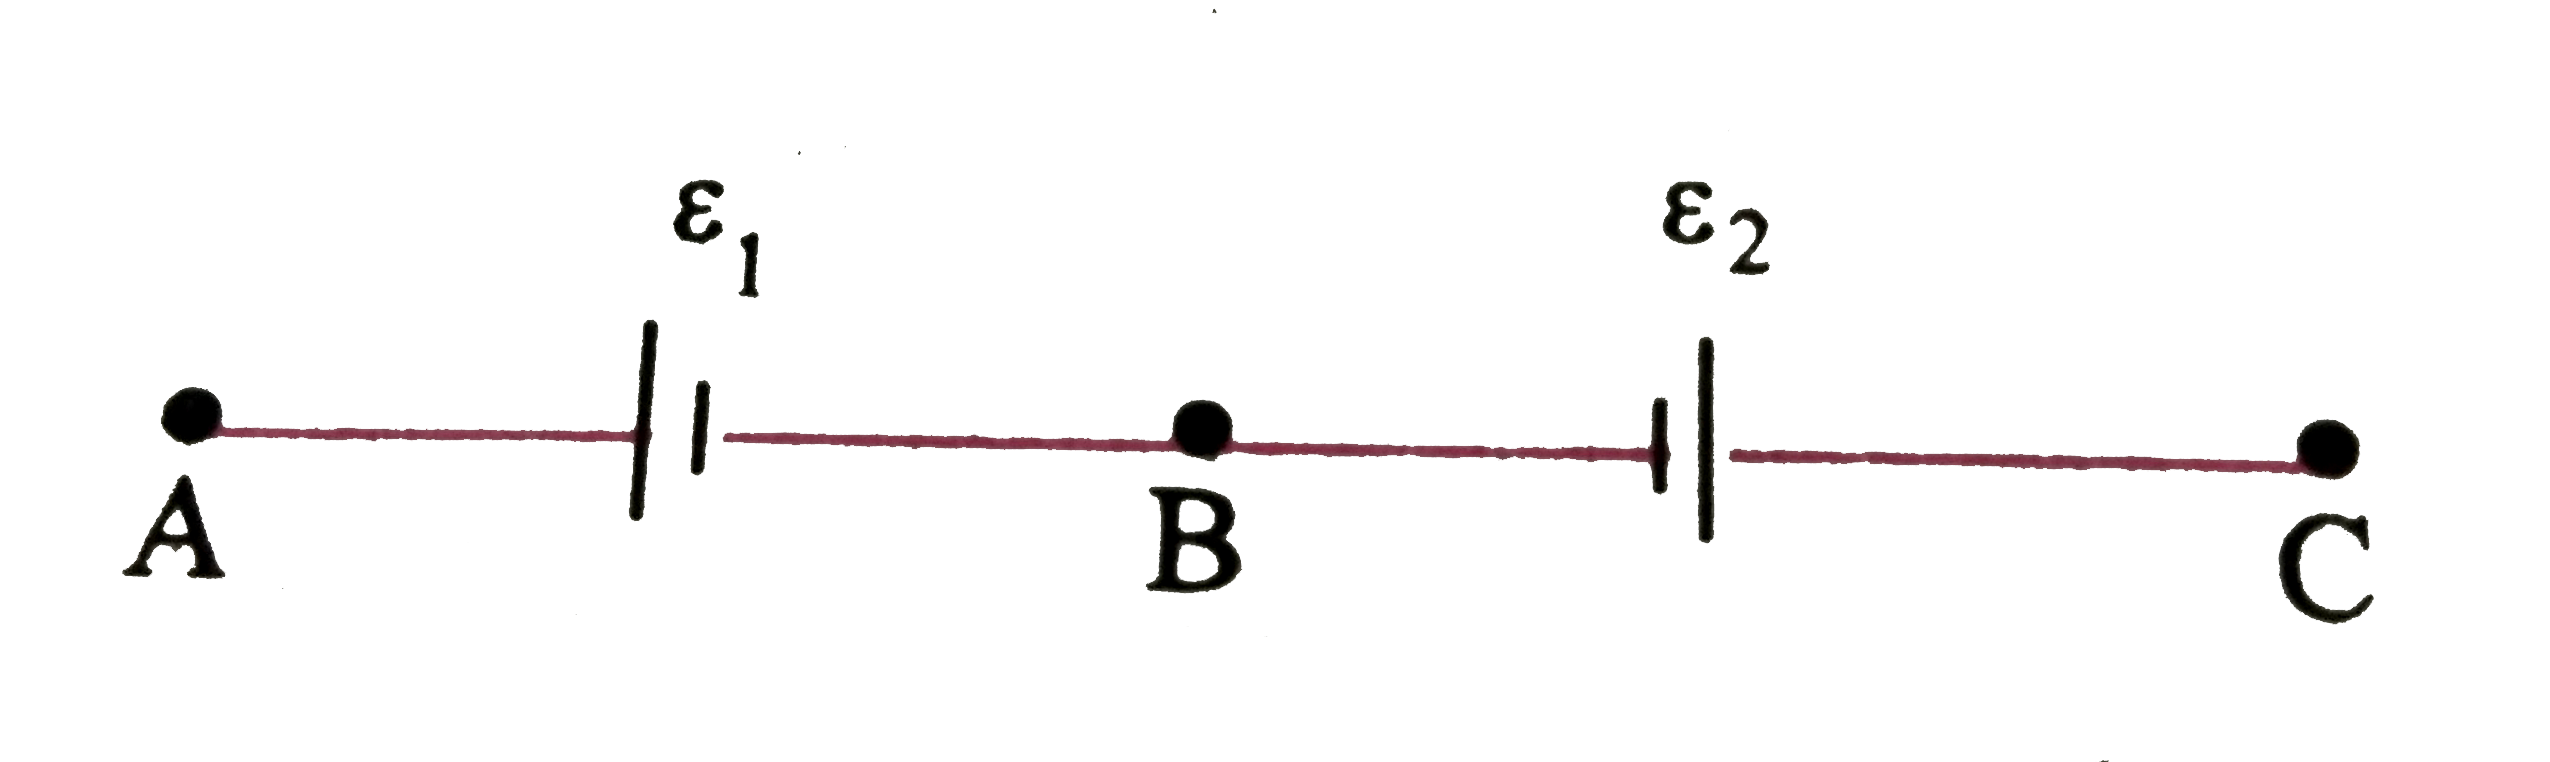 दो सेल  , जिसके  वि वा बल epsilon(1) और epsilon(2)(epsilon(1) gt epsilon(2))  है । चित्र  में दर्शाये  अनुसार जोड़े गयेहै । जब एक विभवमापी  Aऔर B के बीच जोड़े गये है तो संतुलन लम्बाई 300 सेमी प्राप्त होती हैऔर जब विभवमापी  Aऔर C के बीच जोड़े गये है तो संतुलन लम्बाई 100 सेमी प्राप्त होती है  epsilon(1) और epsilon(2) का अनुपात ज्ञात कीजिए ।